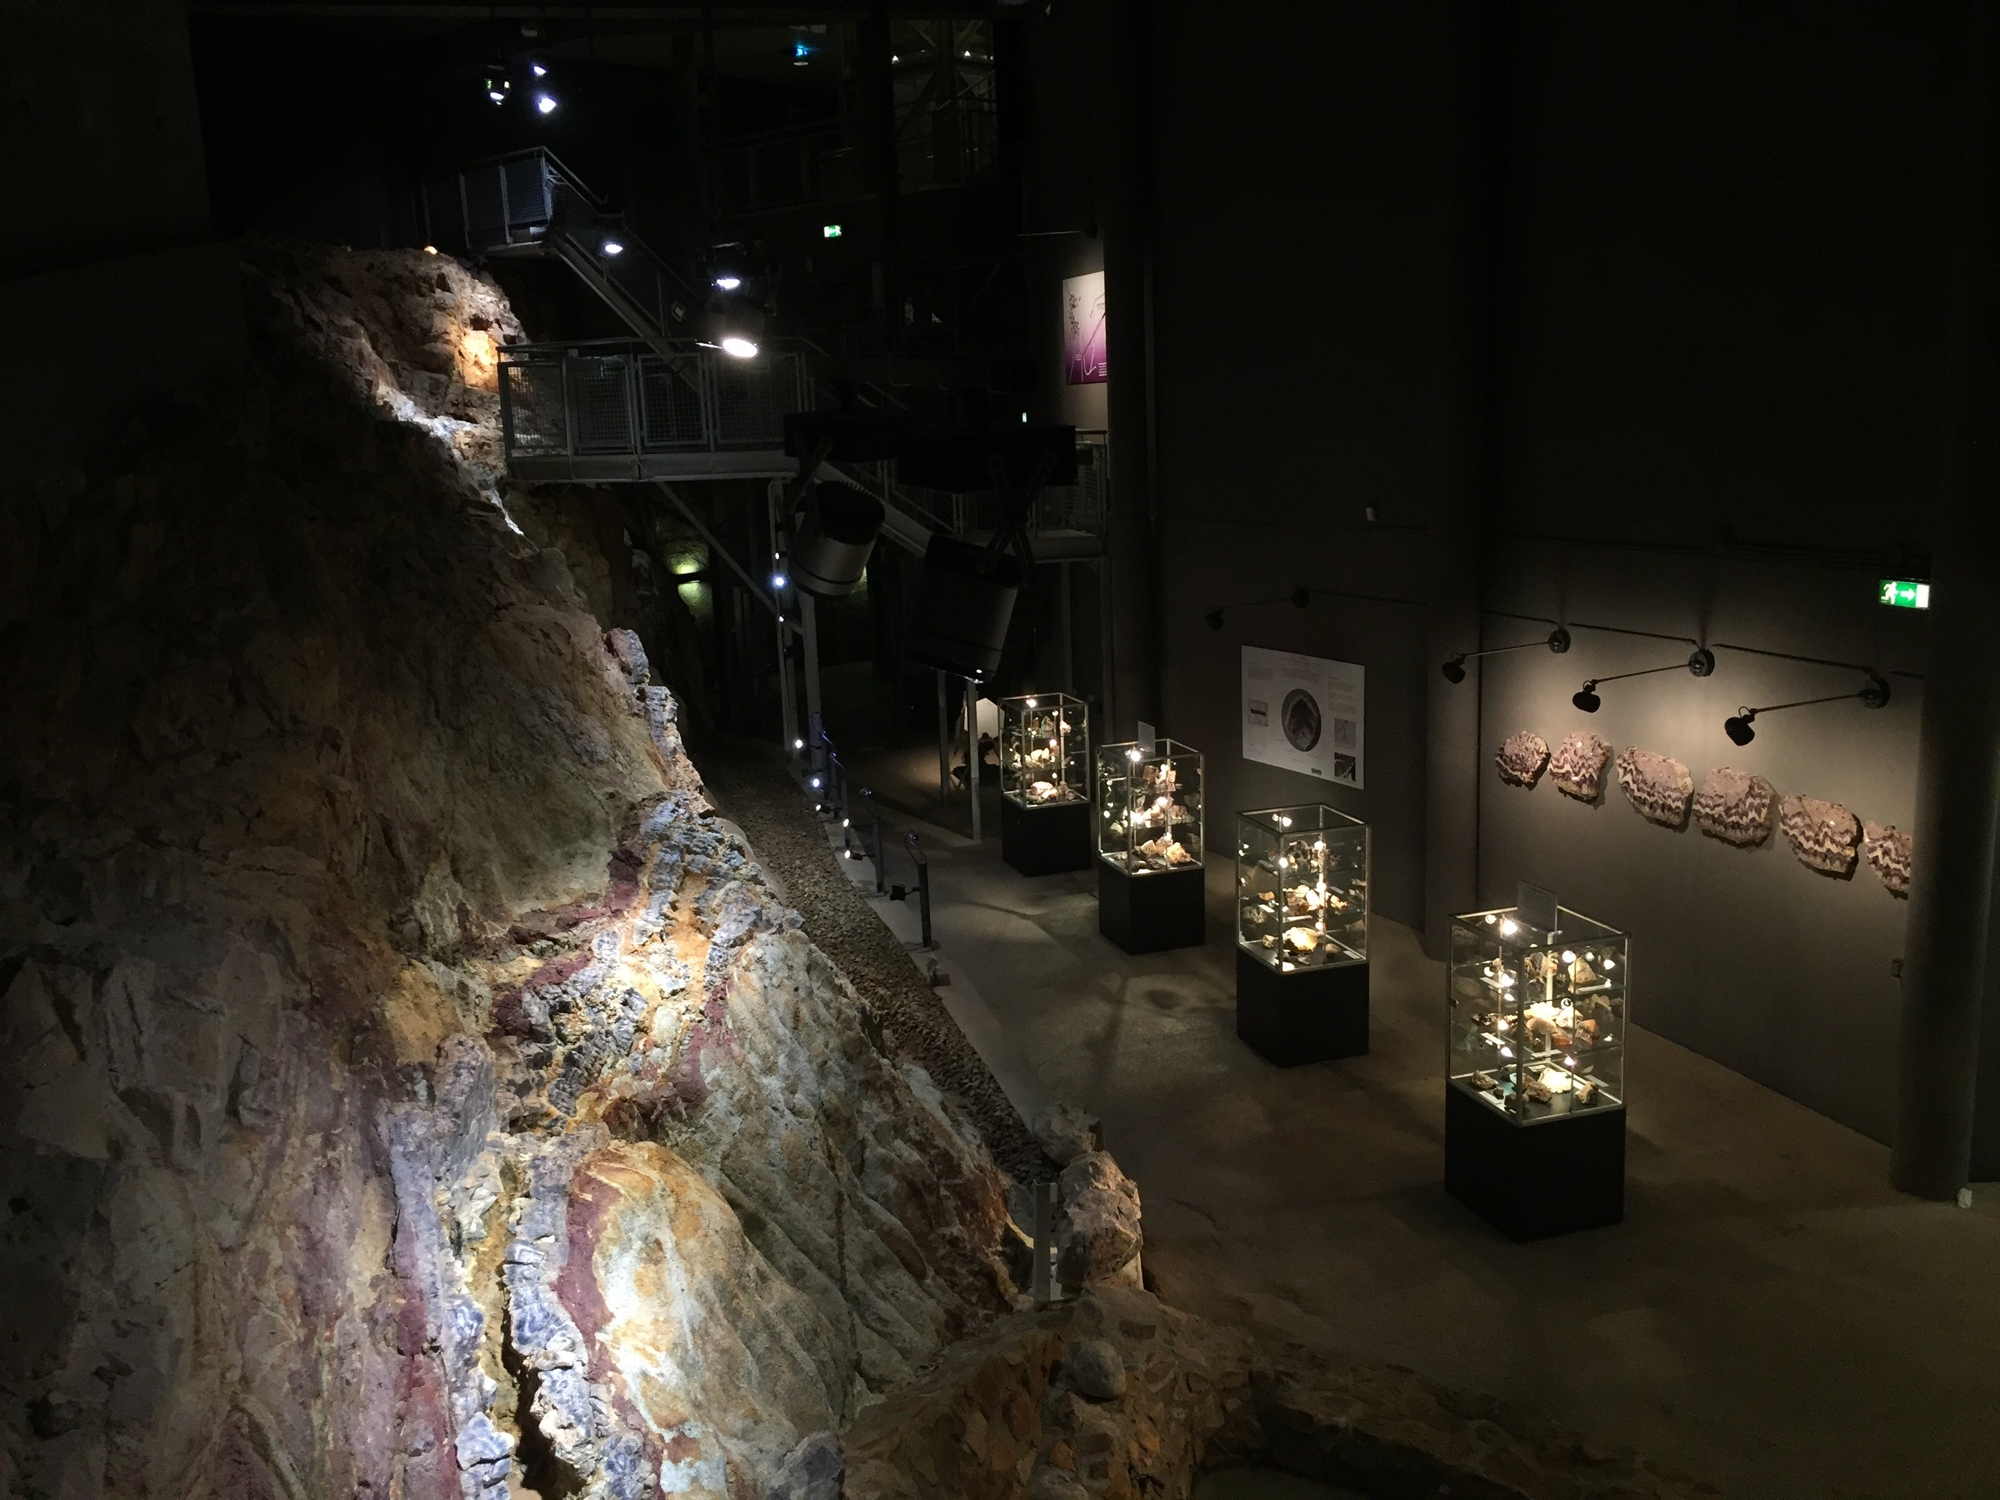 Blick in den Schaustollen, links ein Ausschnitt des Bänderamethystgangs, im Hintergrund Glasvitrinen mit verschiedenen verwandten Steinen, rechts an der Wand sechs Amethyst-Querschnitte